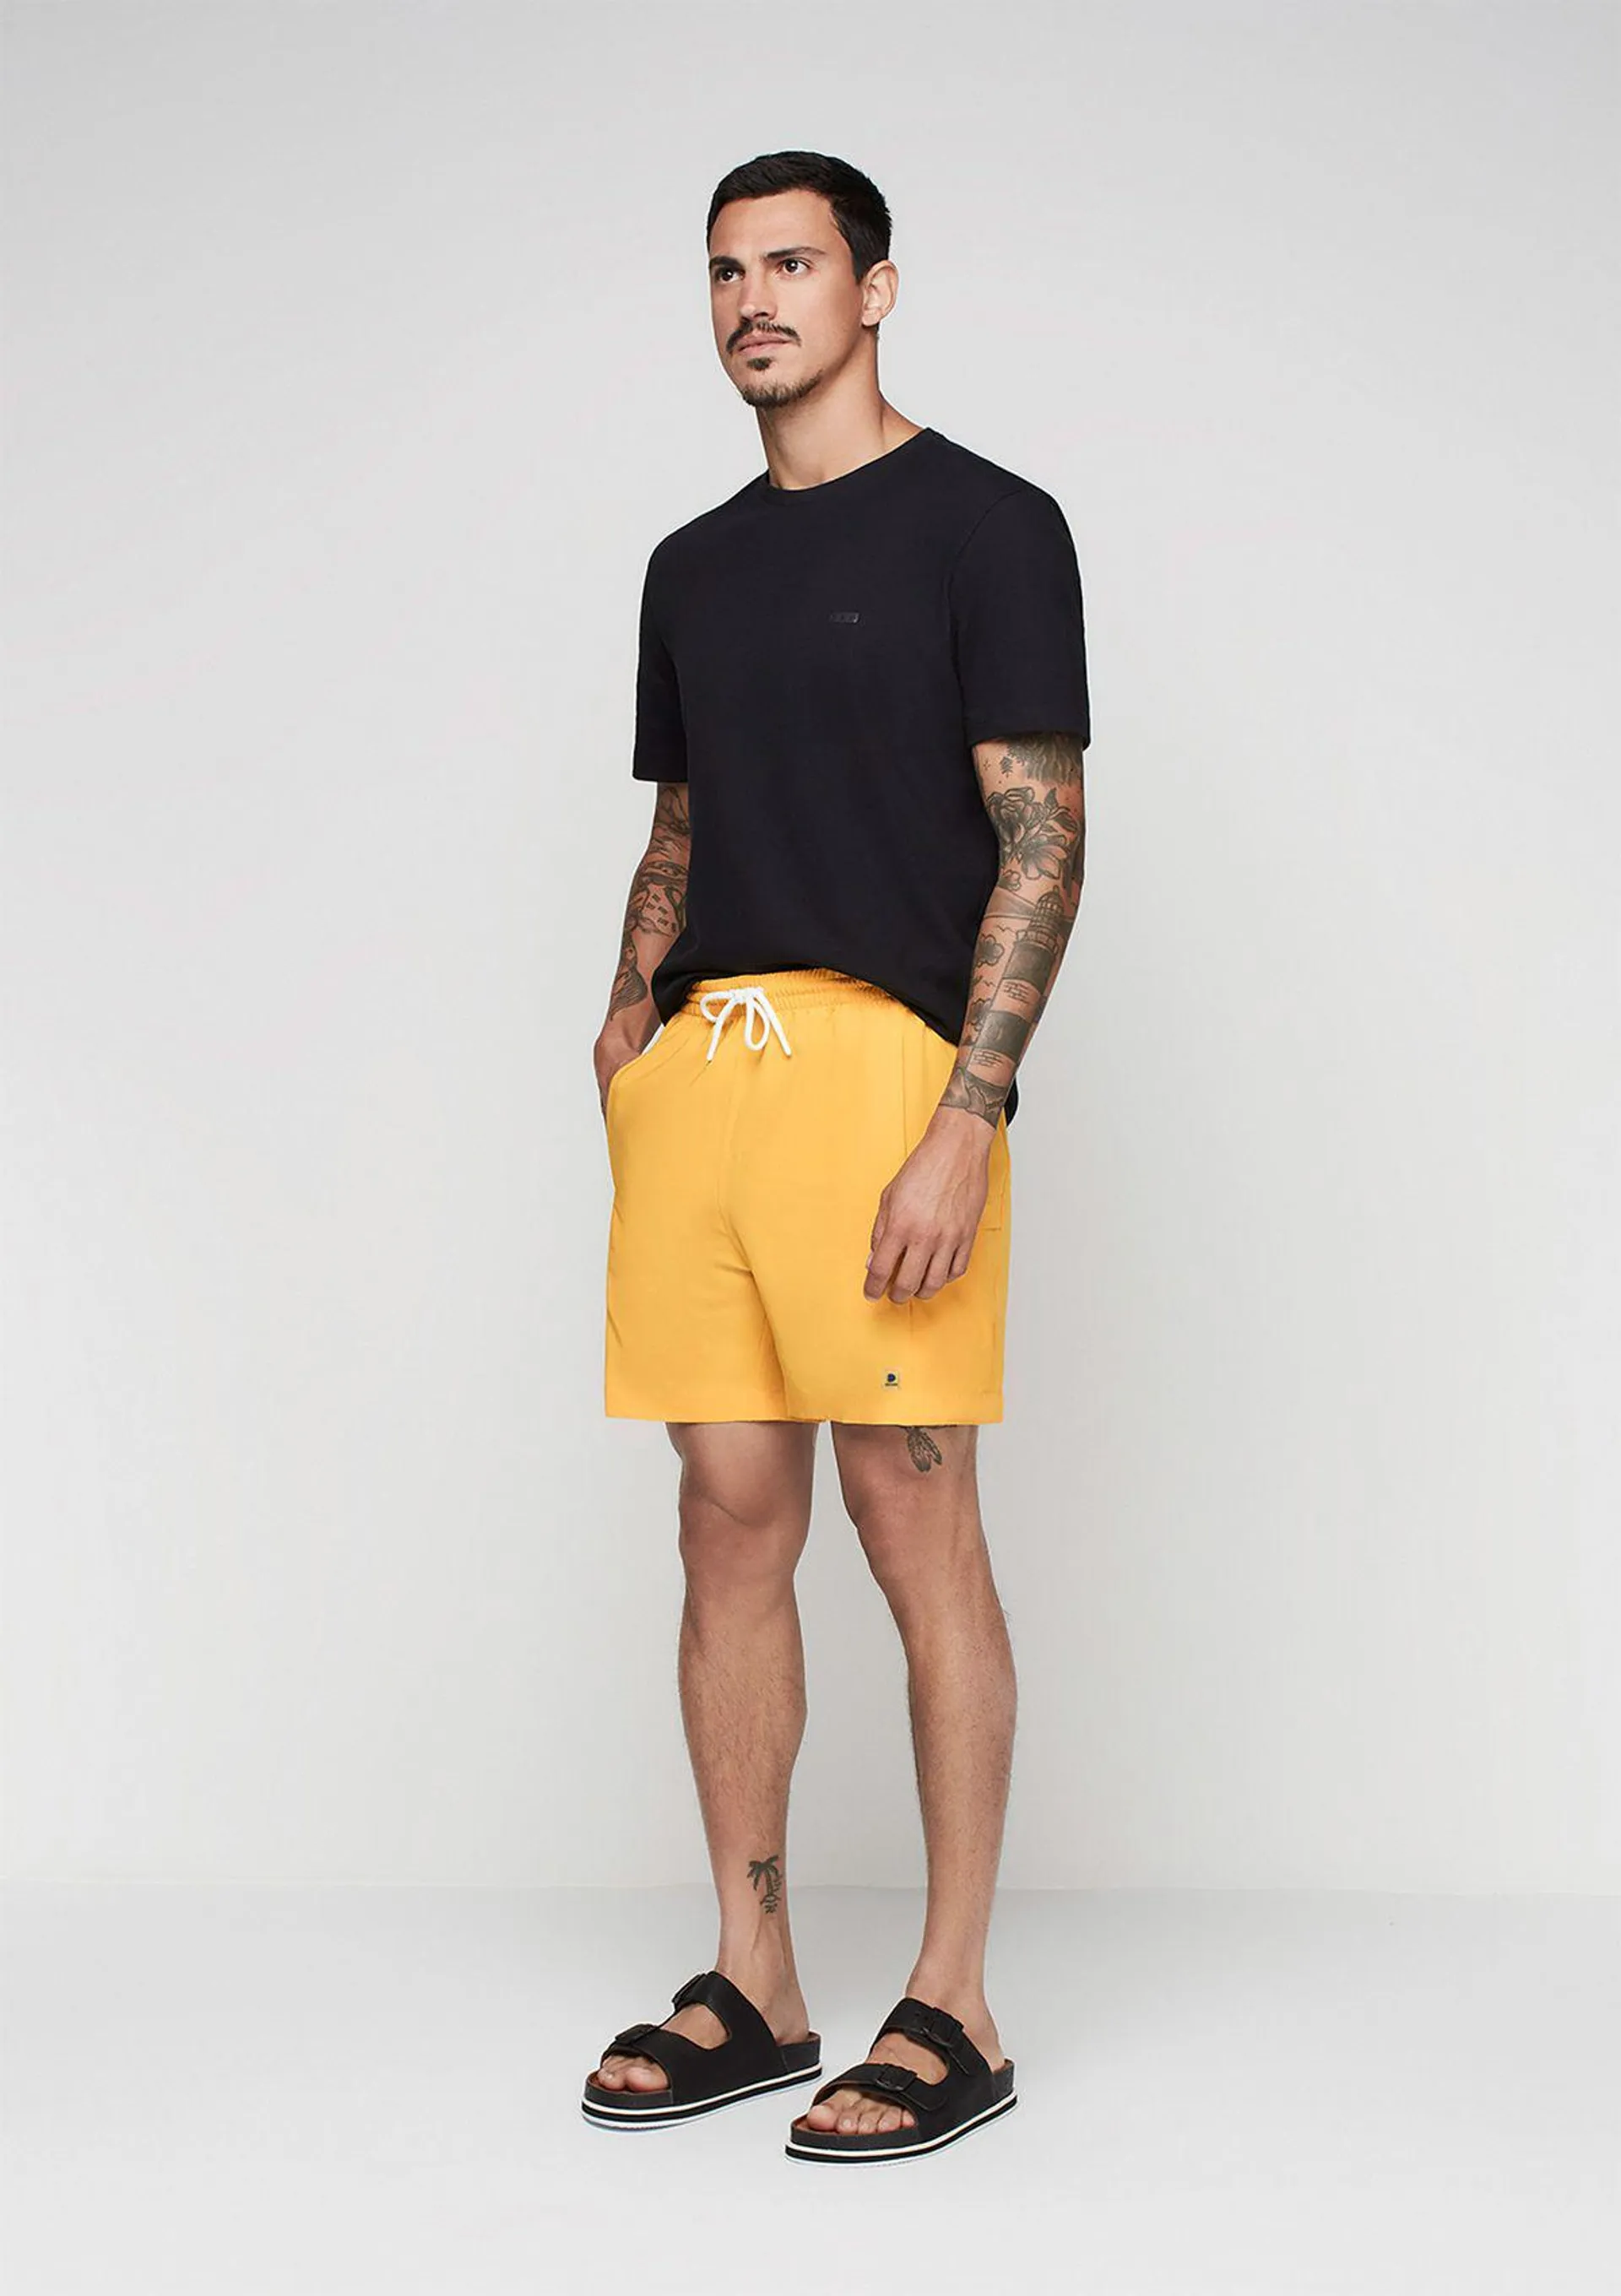 Shorts Masculino De Banho Com Cordão - Amarelo